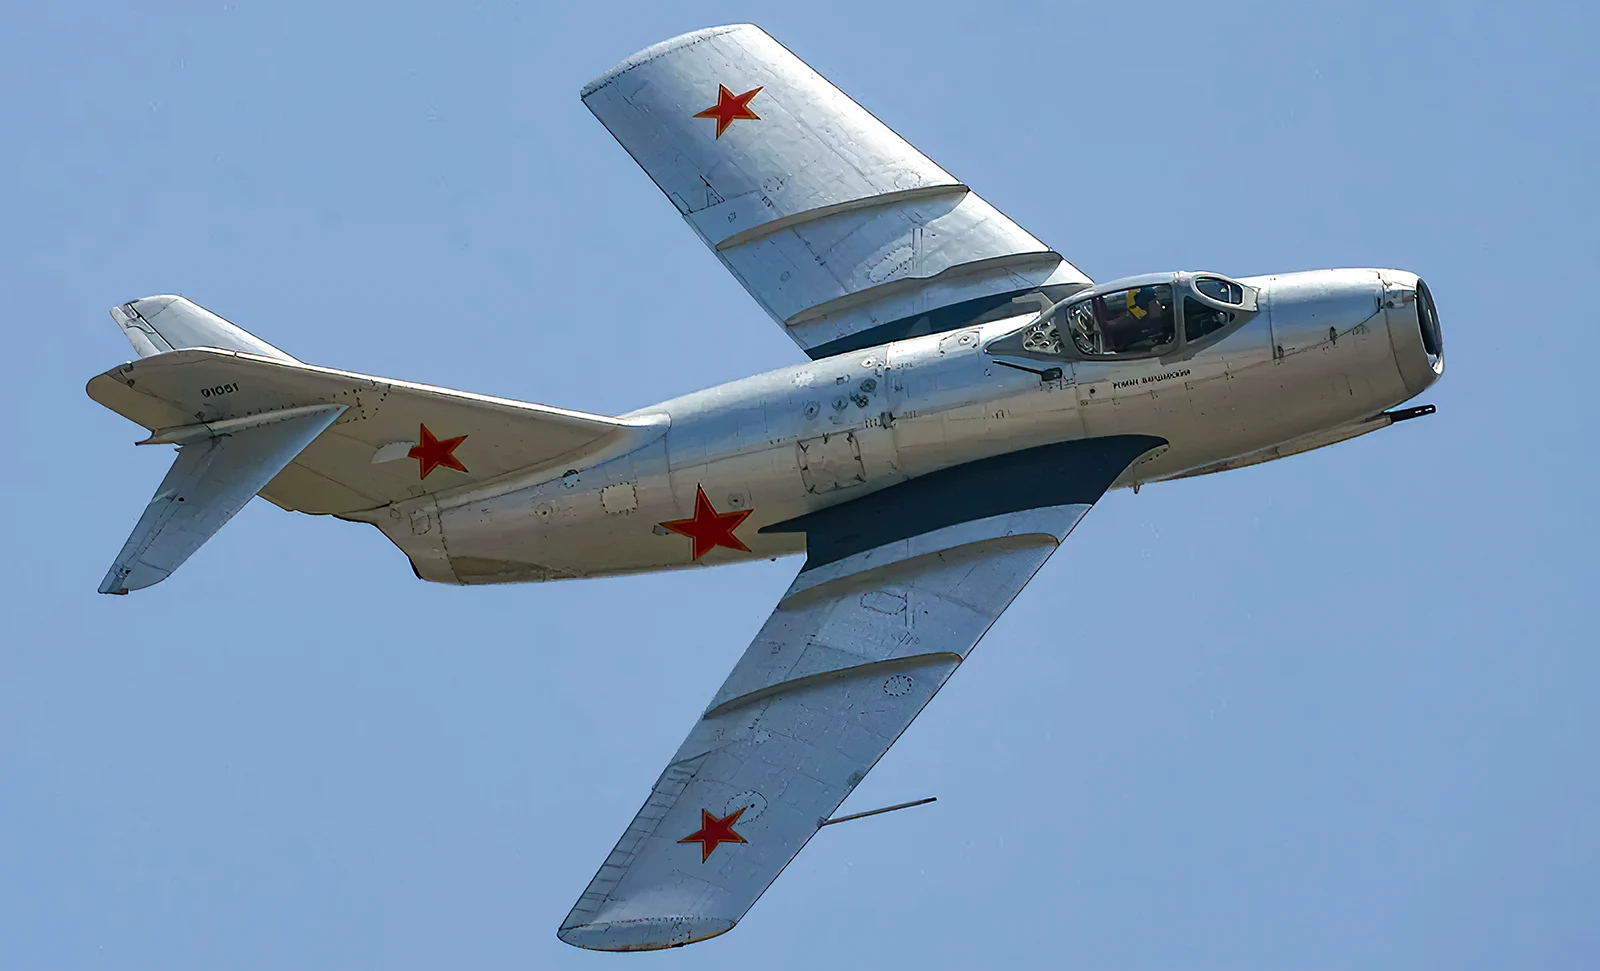  construidos: El caza ruso MiG-15 era una verdadera potencia